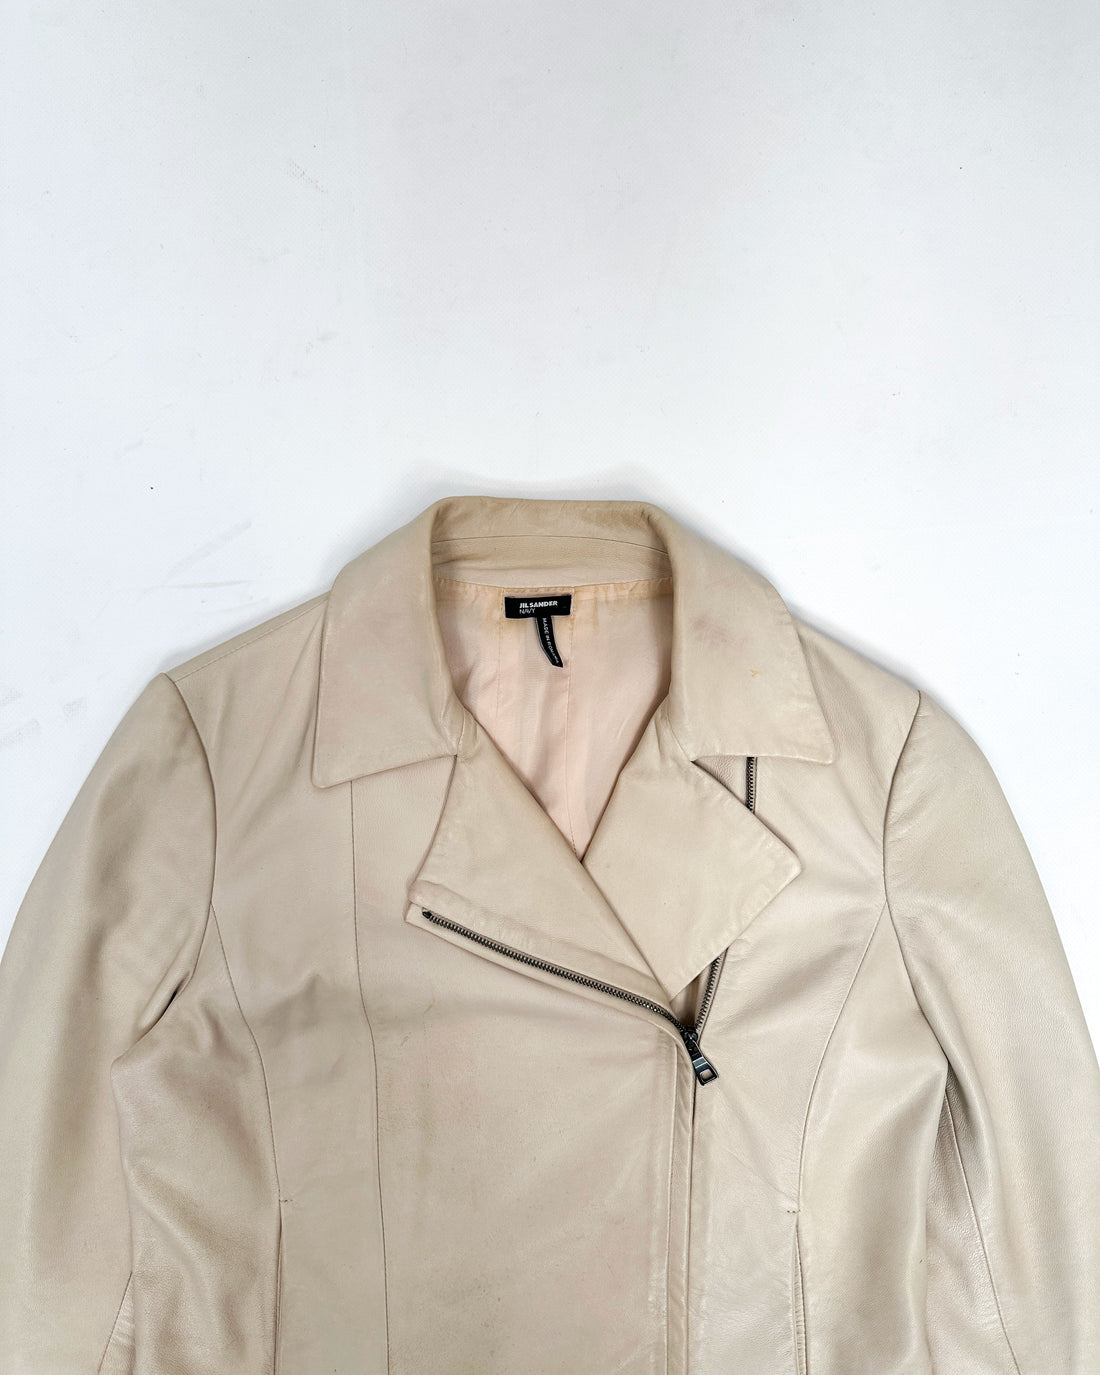 Jil Sander Light Beige Leather Jacket 2000's